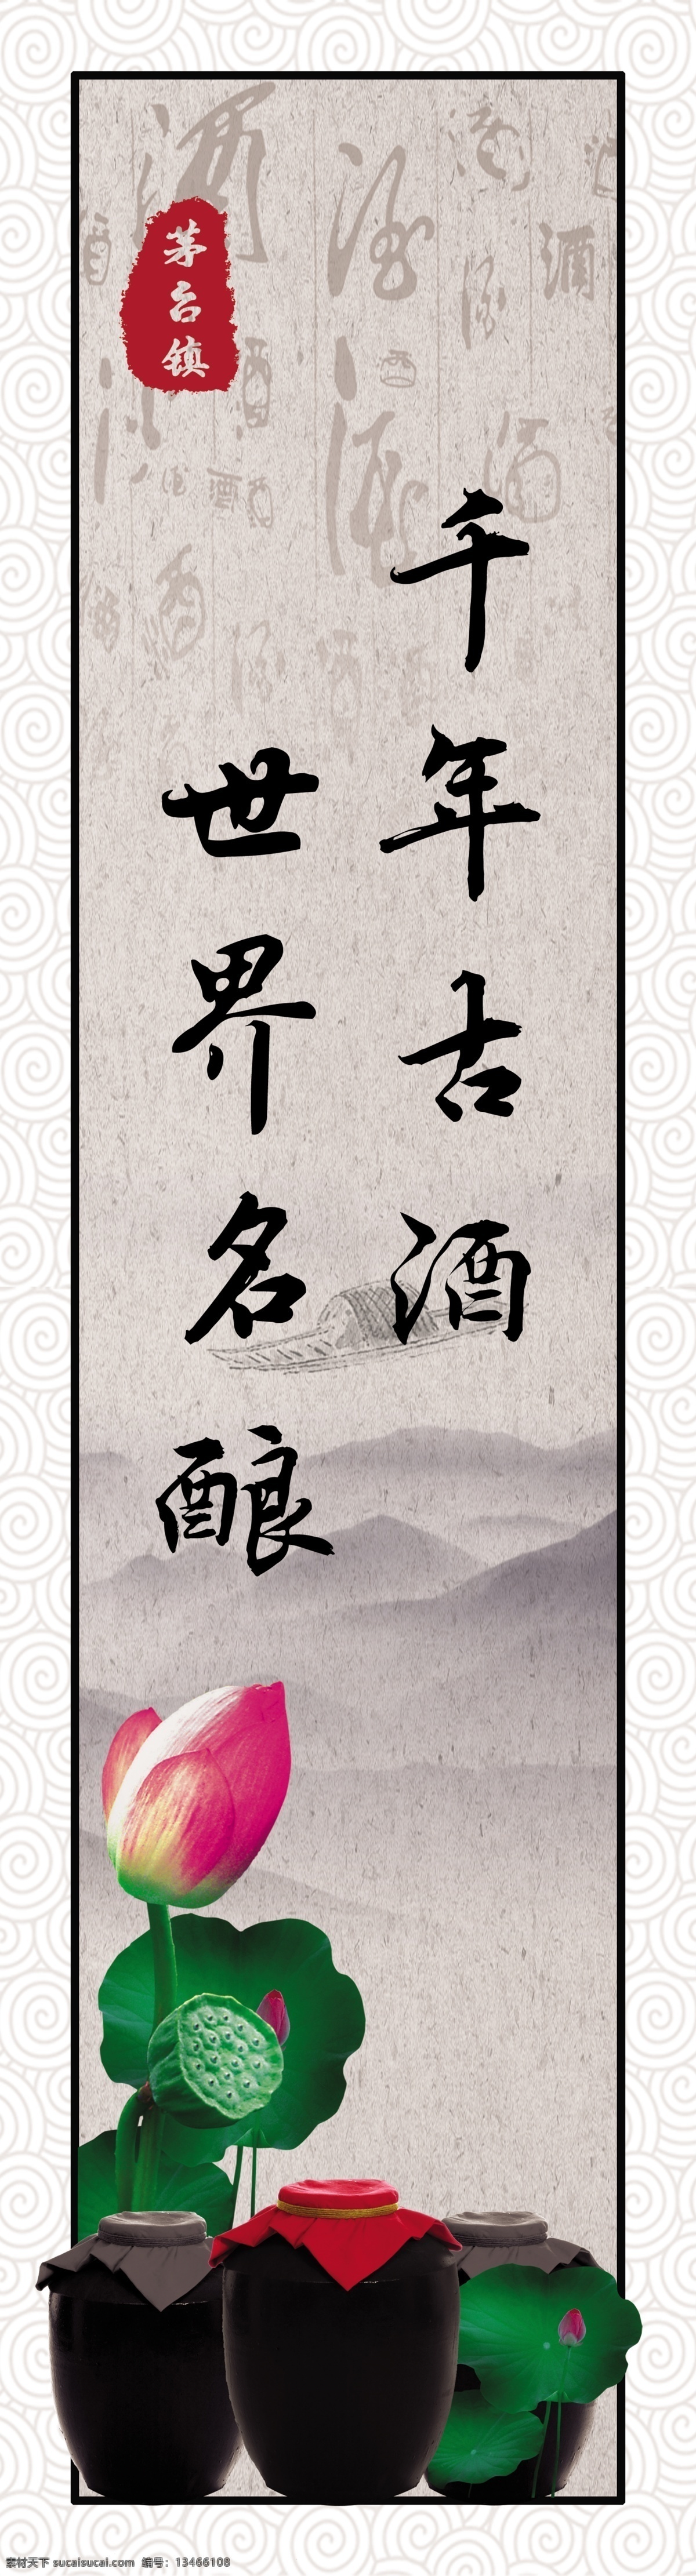 千年古酒 世界名酿 酒文化海报 荷花 酒坛 中国风酒海报